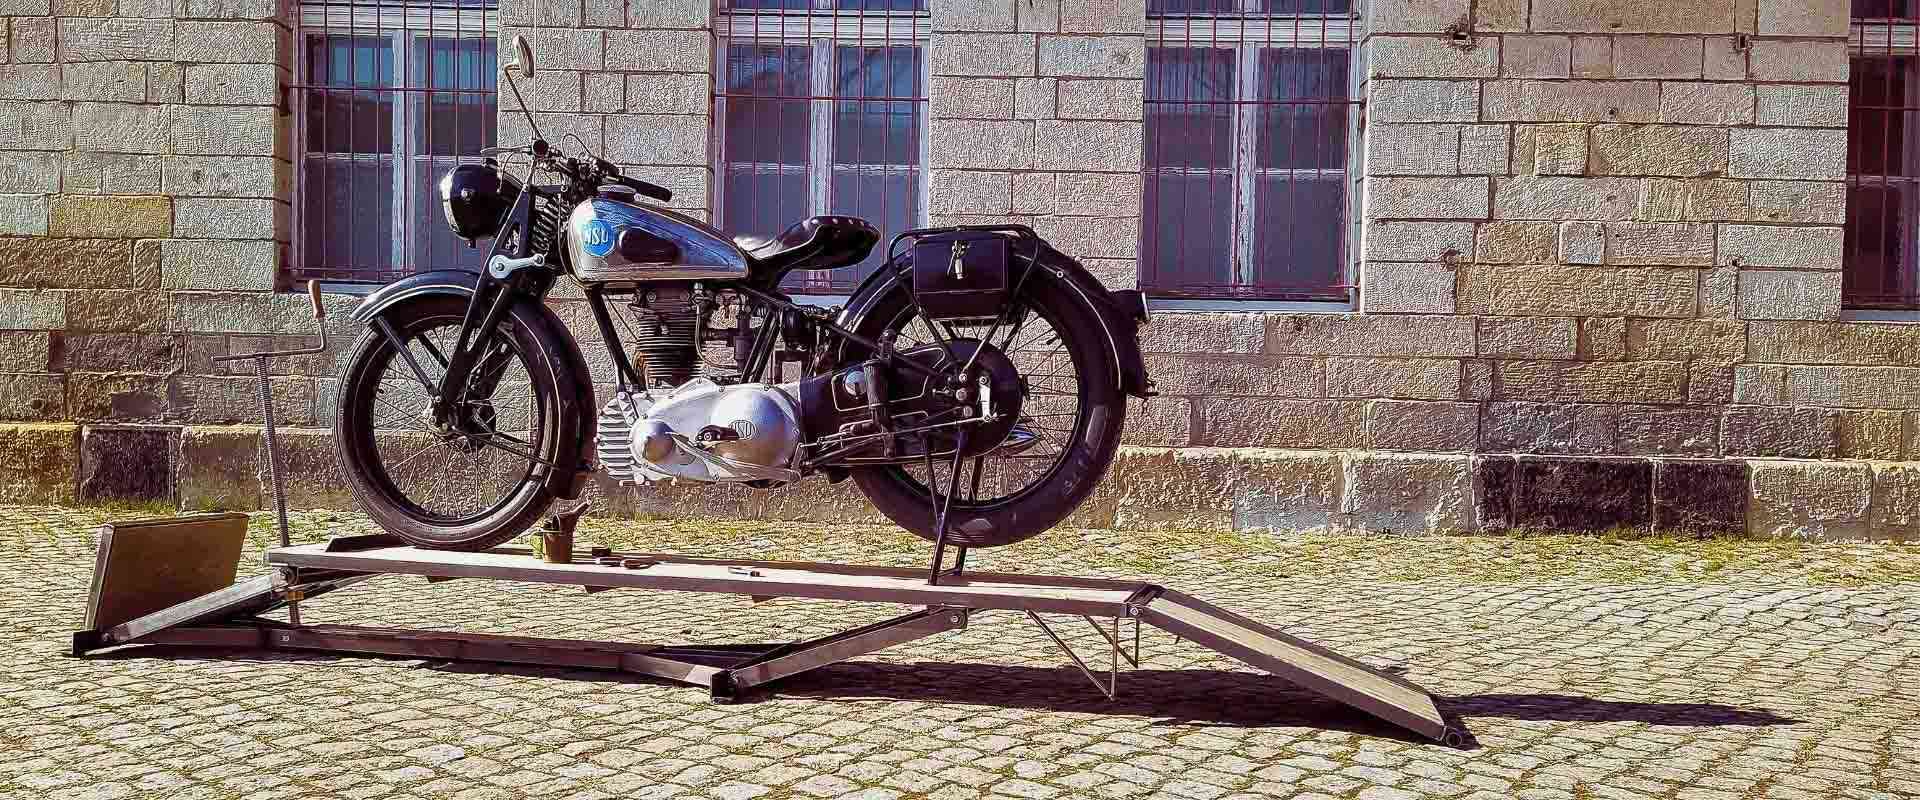 Motorrad mit seitenwagen - Die preiswertesten Motorrad mit seitenwagen auf einen Blick!